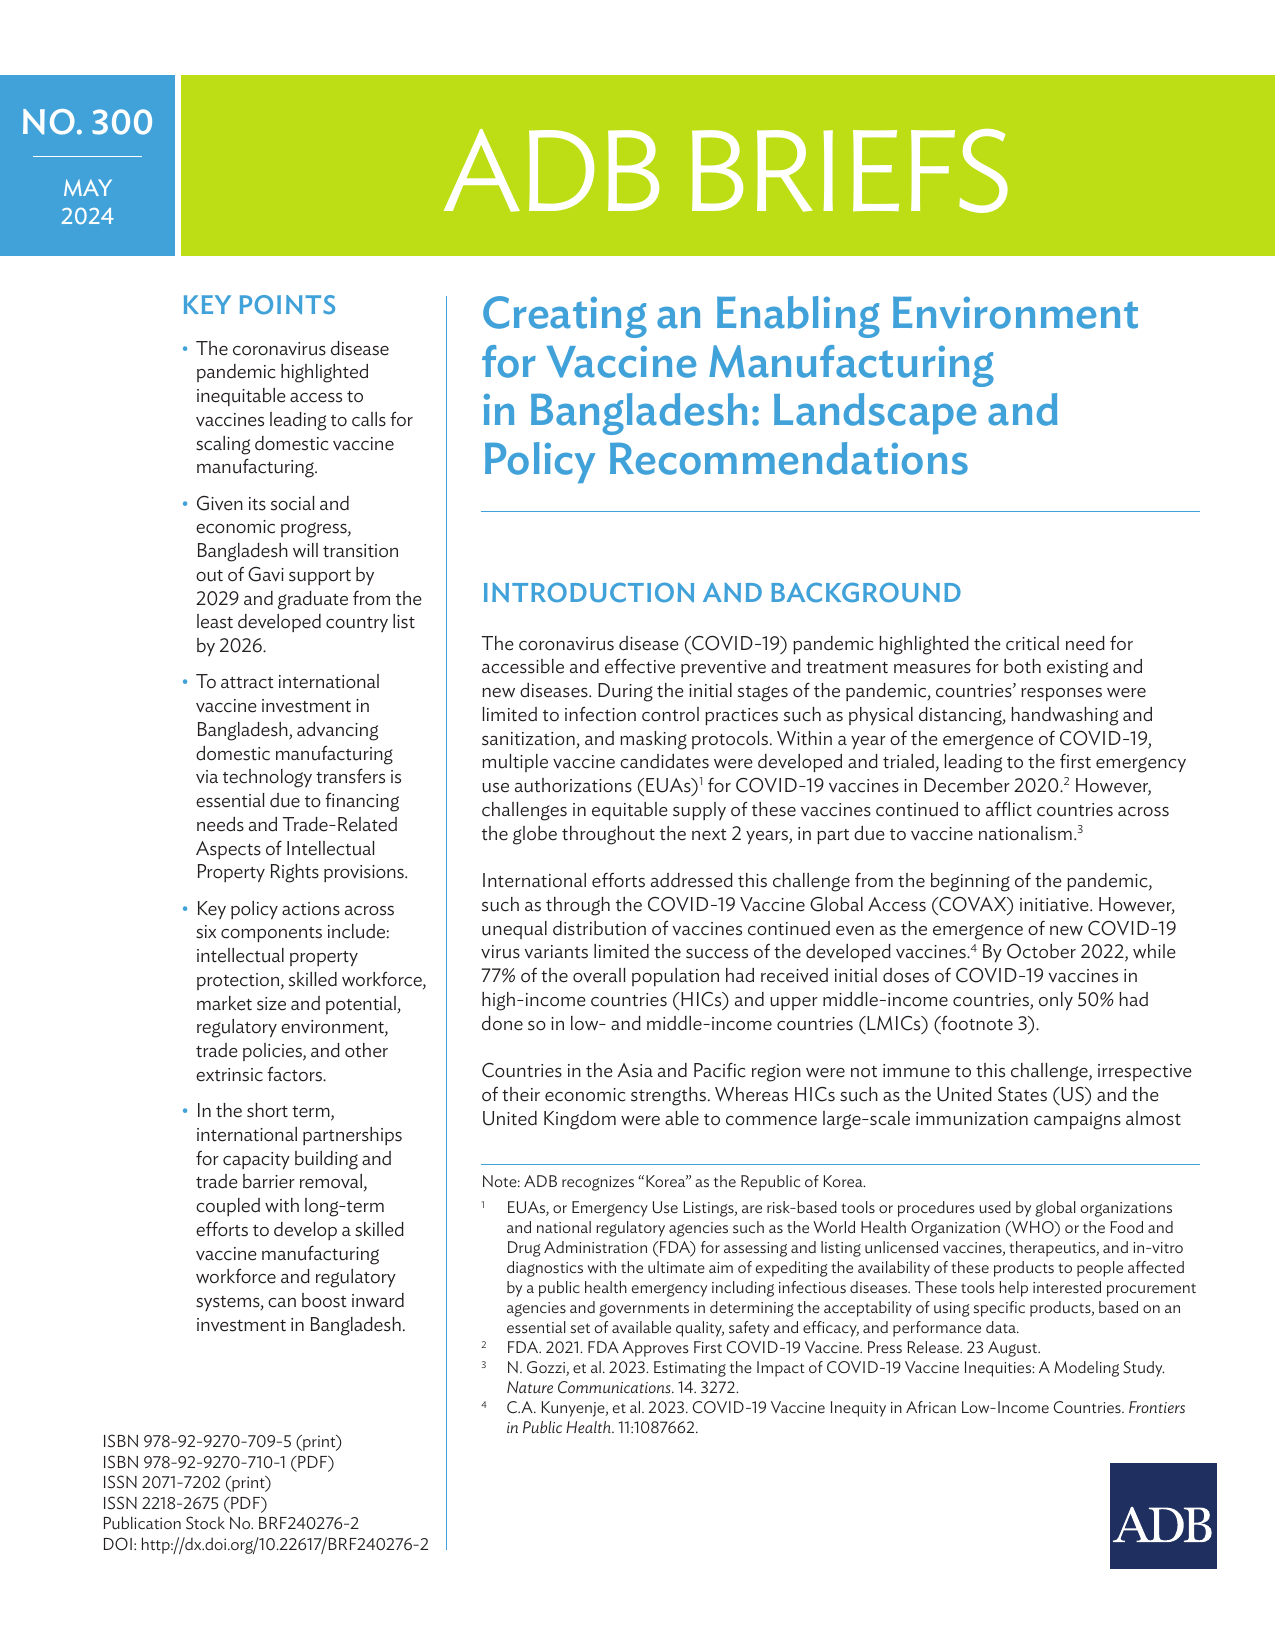 亚开行-为孟加拉国疫苗生产创造有利环境：前景和政策建议（英）.pdf